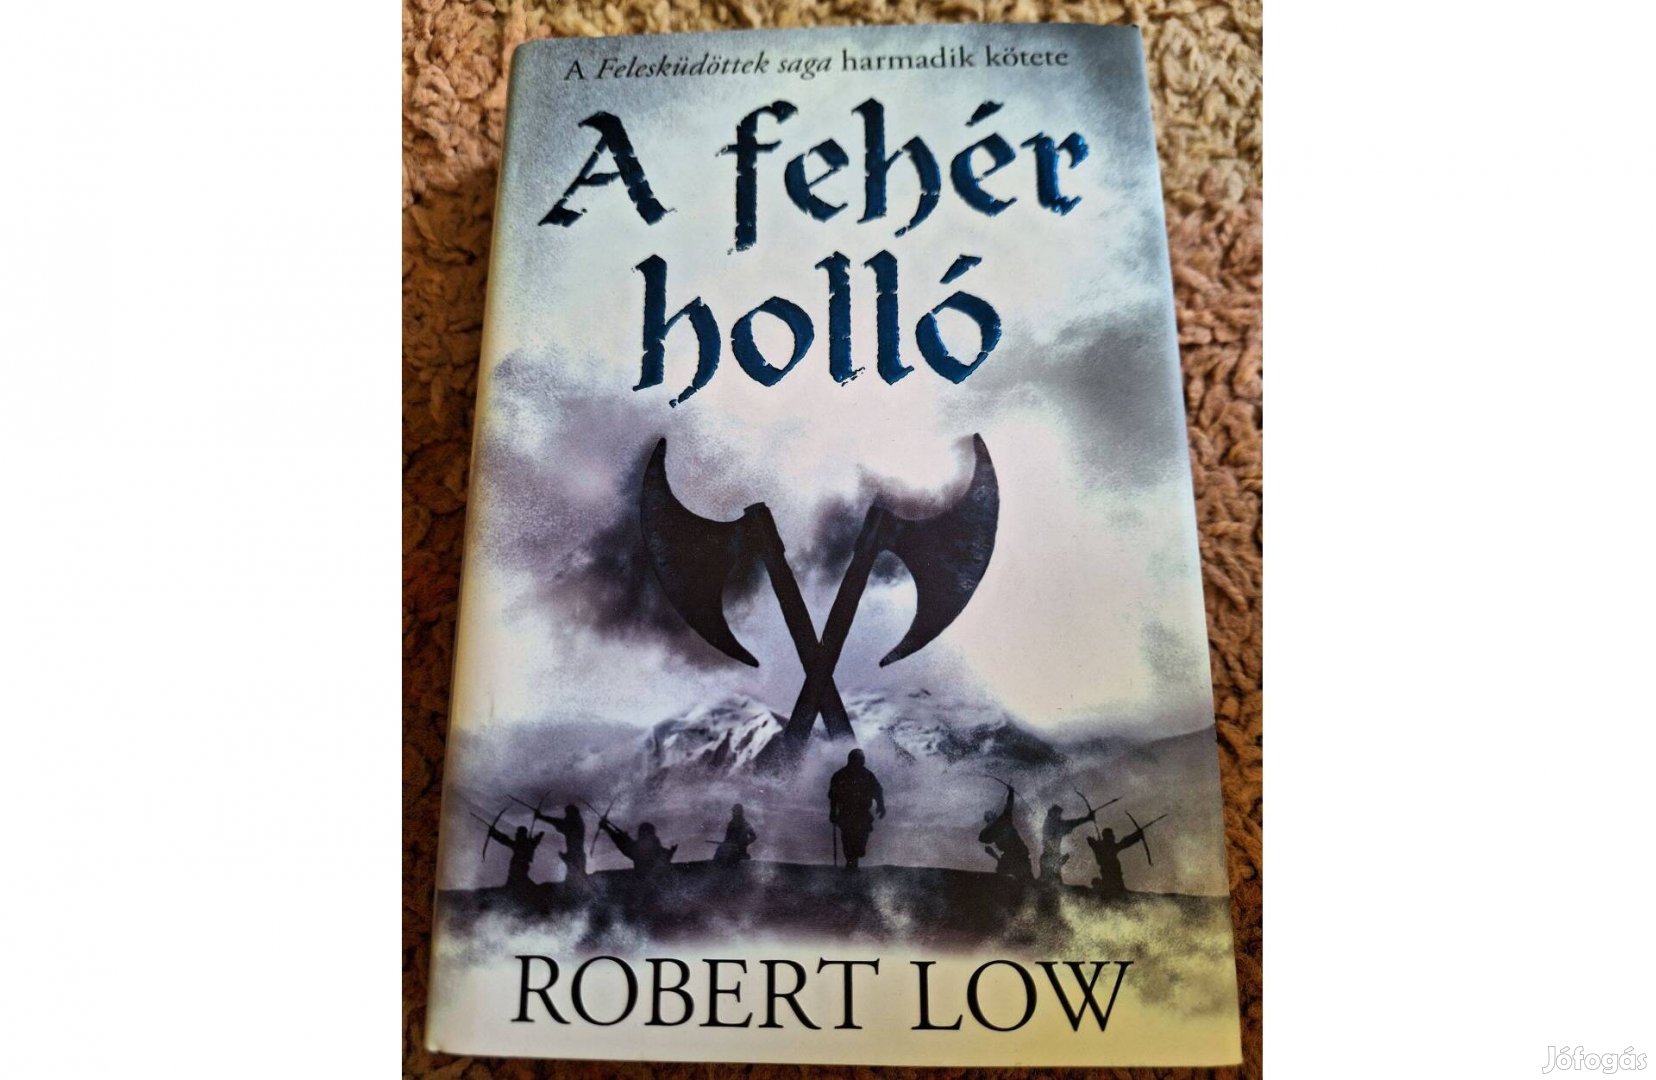 Robert Low - A fehér holló (Felesküdöttek saga 3.)